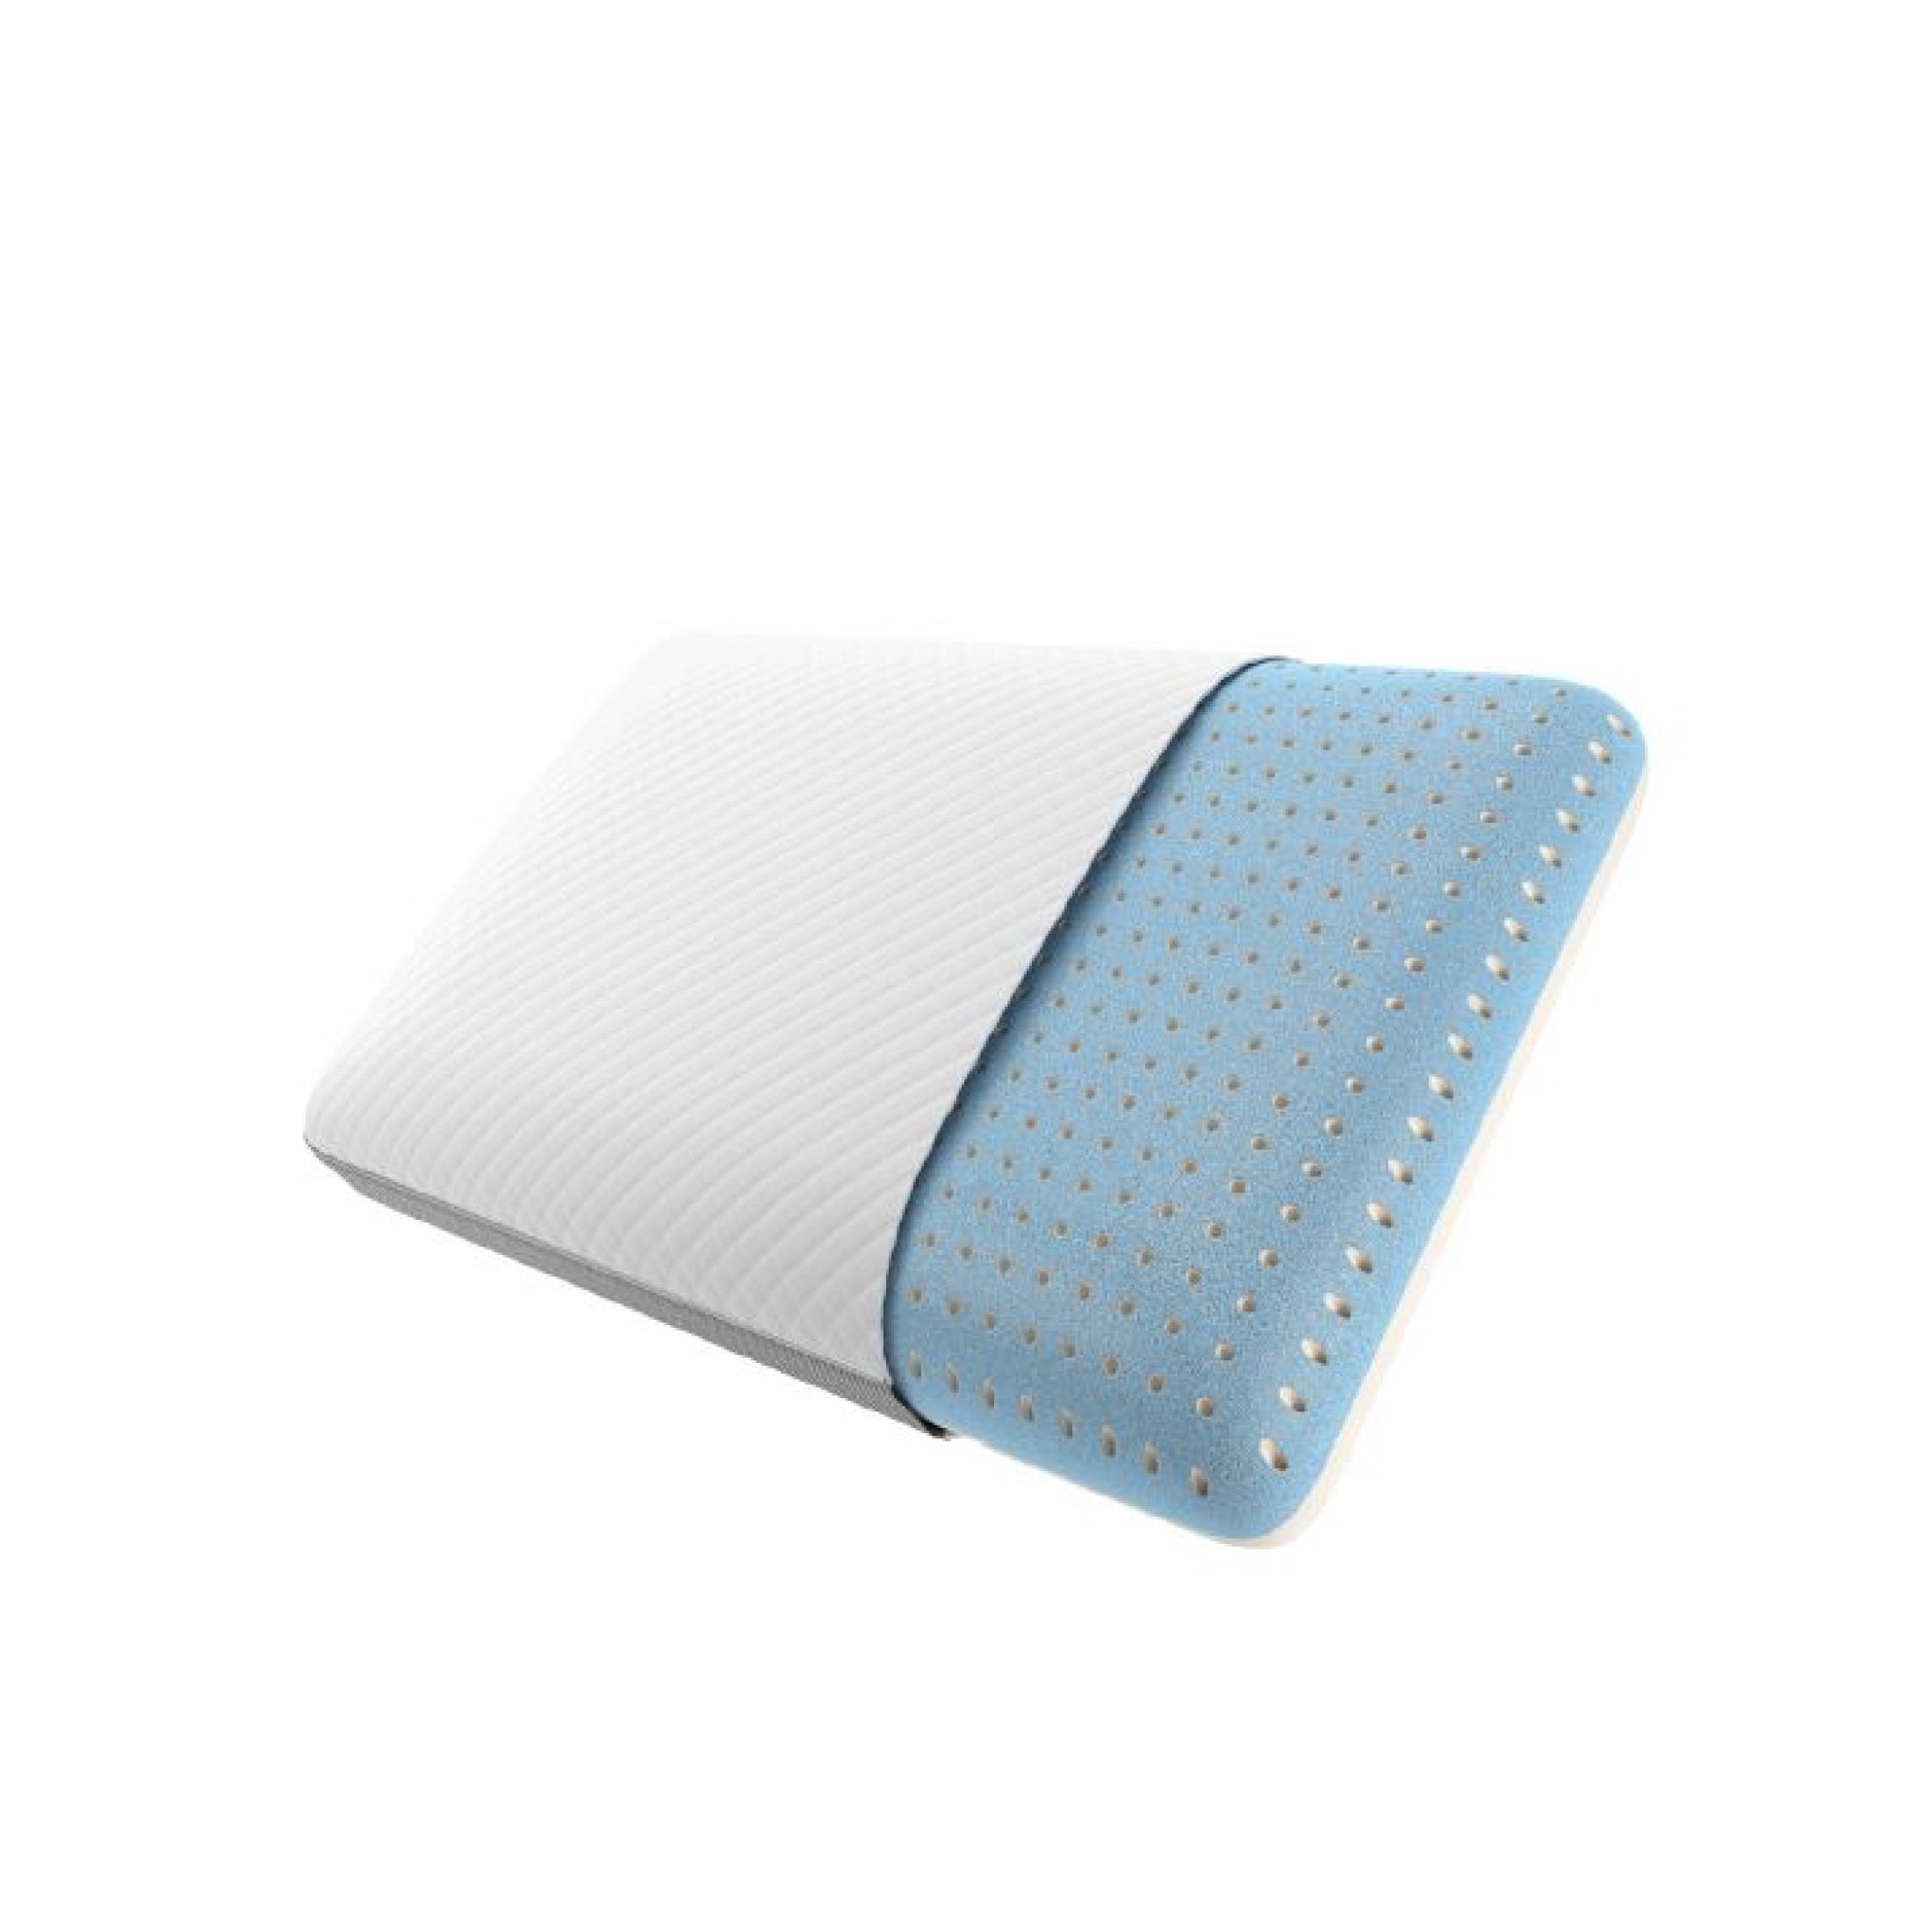 MyPillow 2.0 Cooling Bed Pillow, 2-Pack Queen Medium